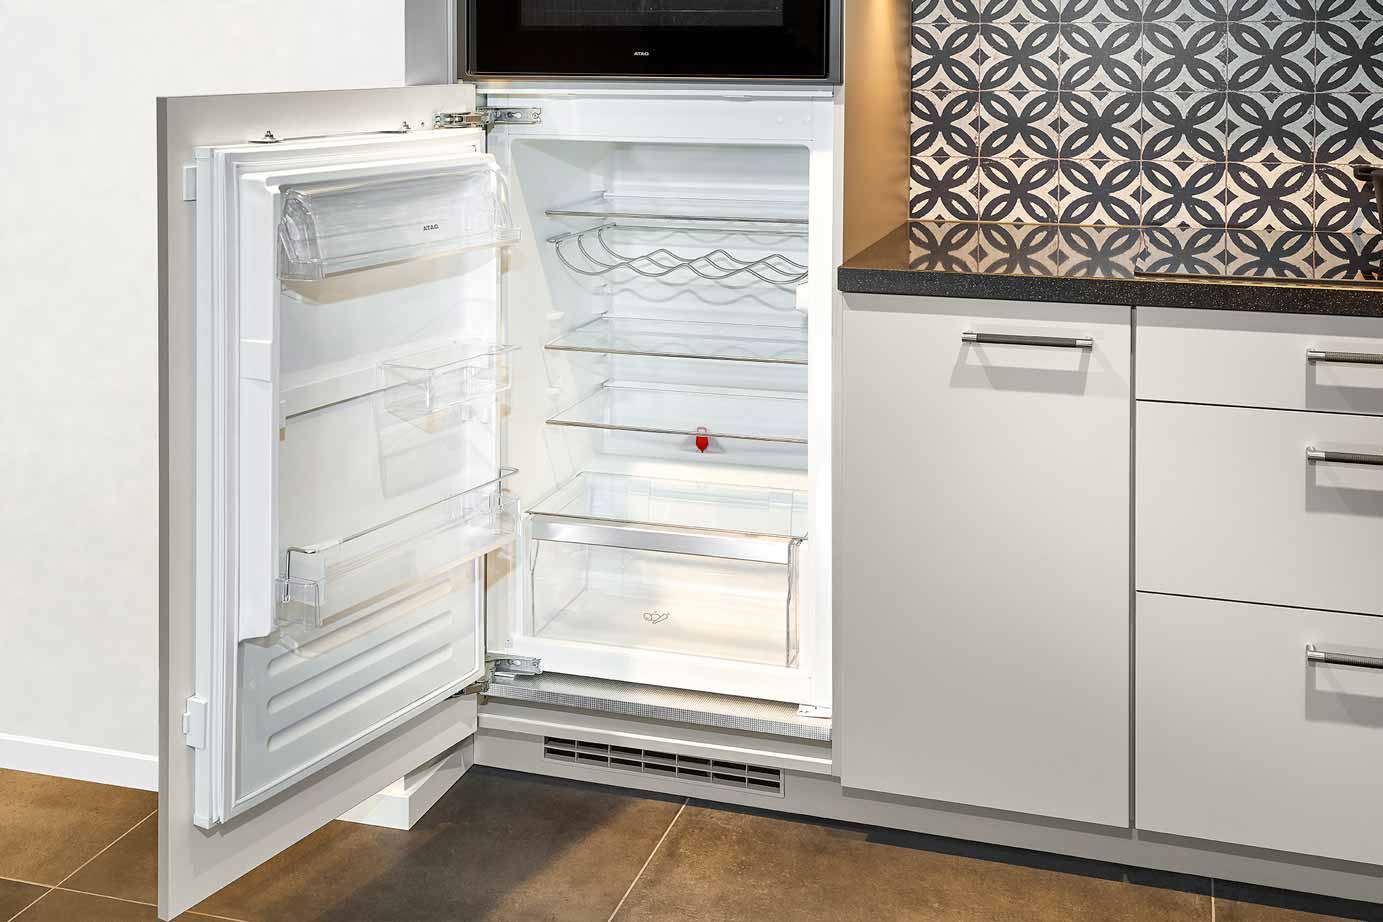 Grijze hoekkeuken met koelkast